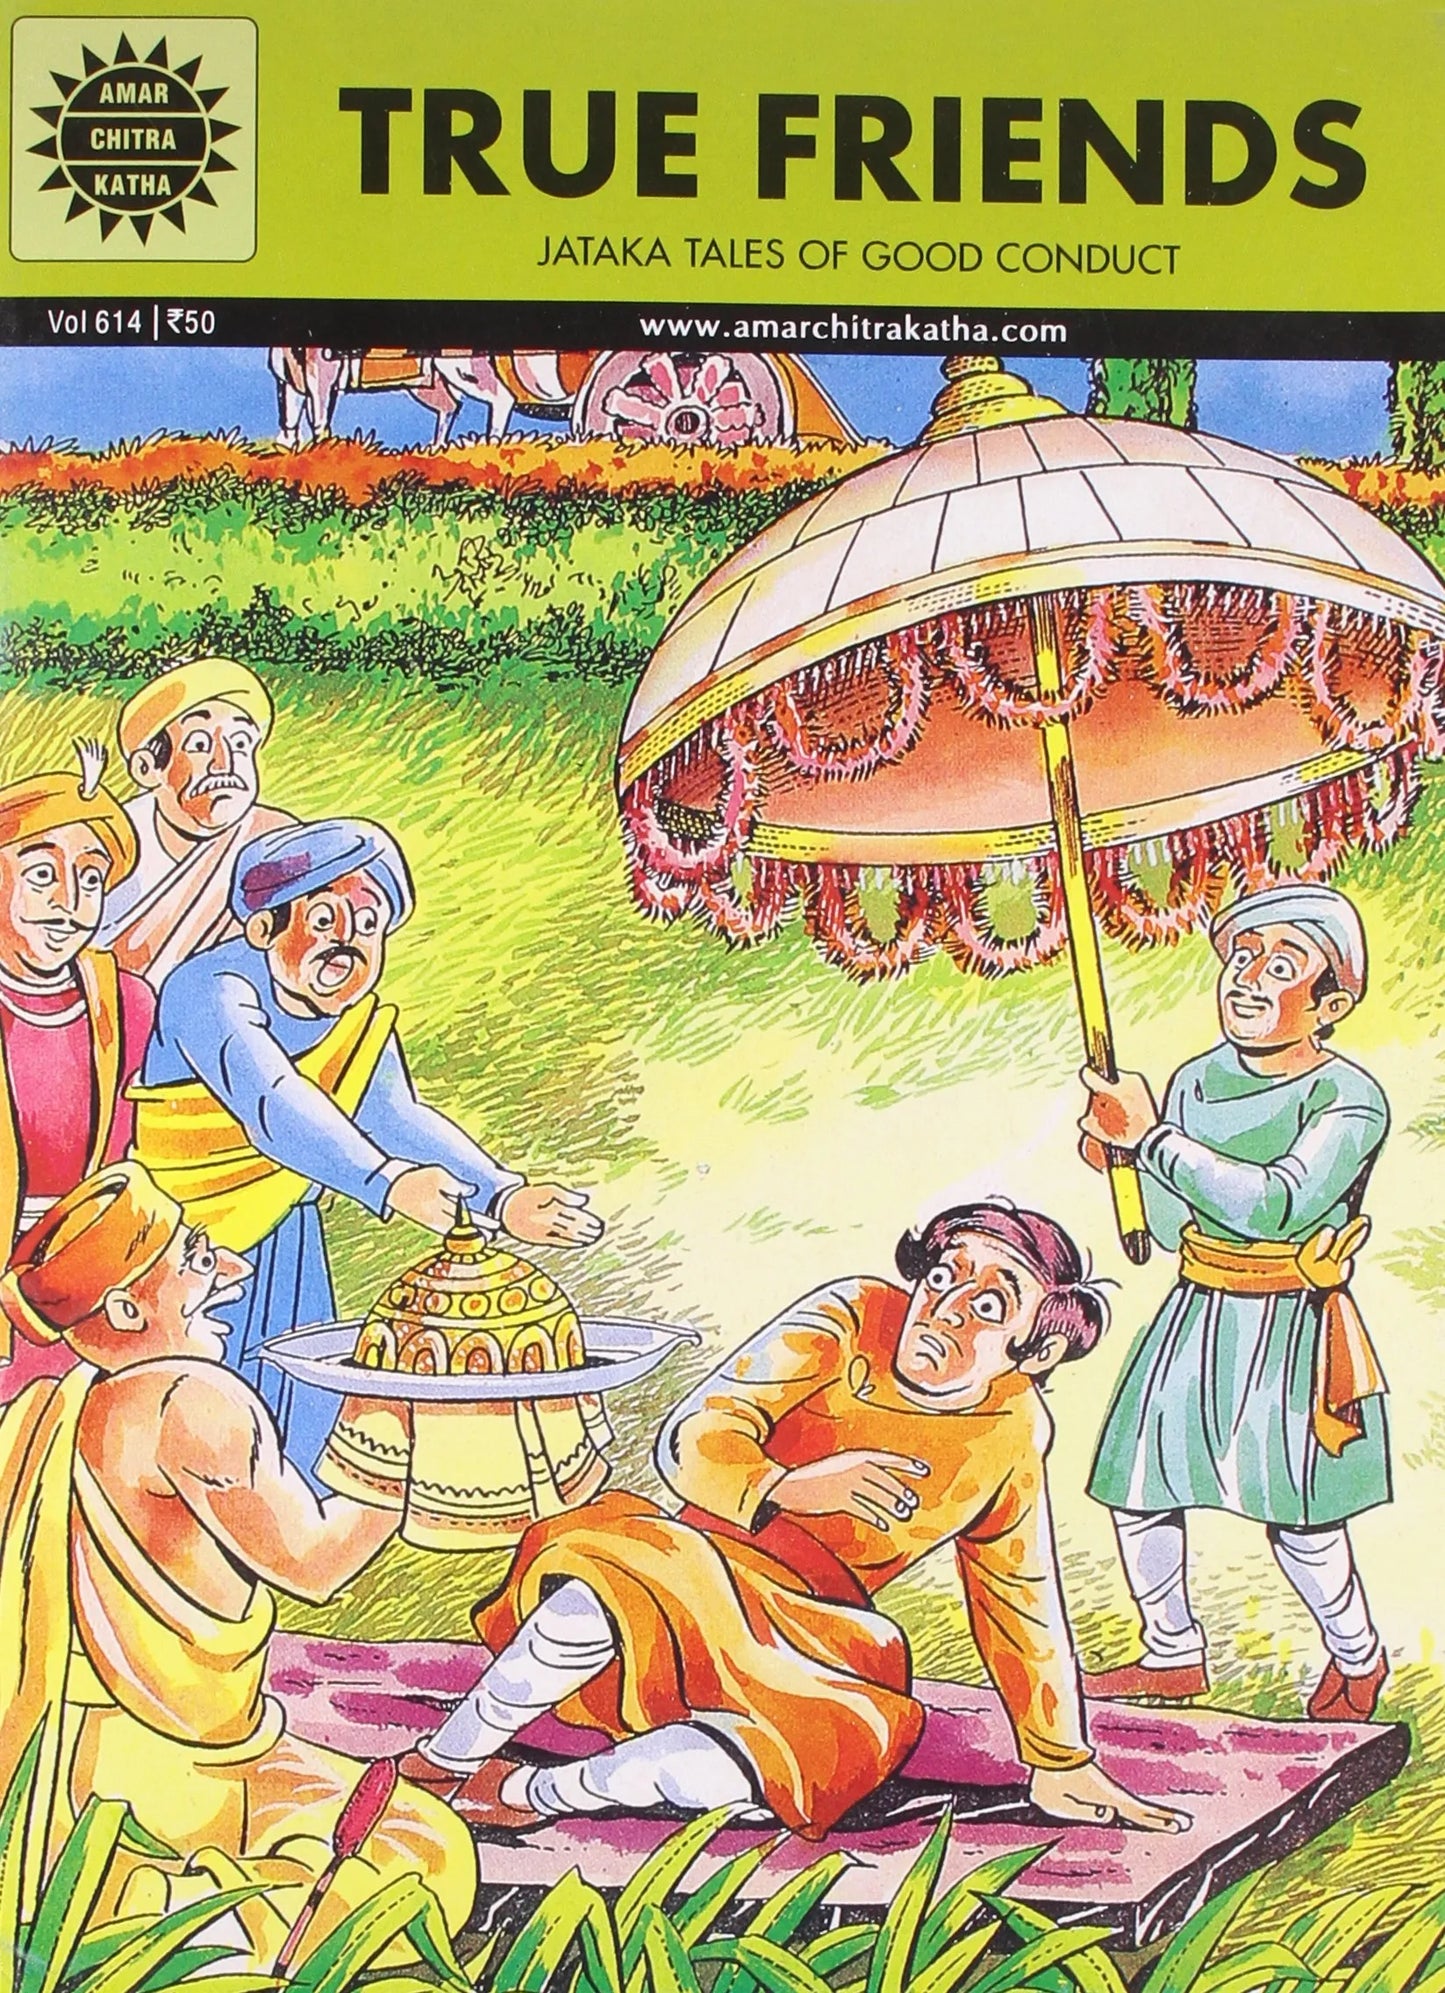 Amar Chitra Katha - True Friends - Jataka Tales of Good Conduct